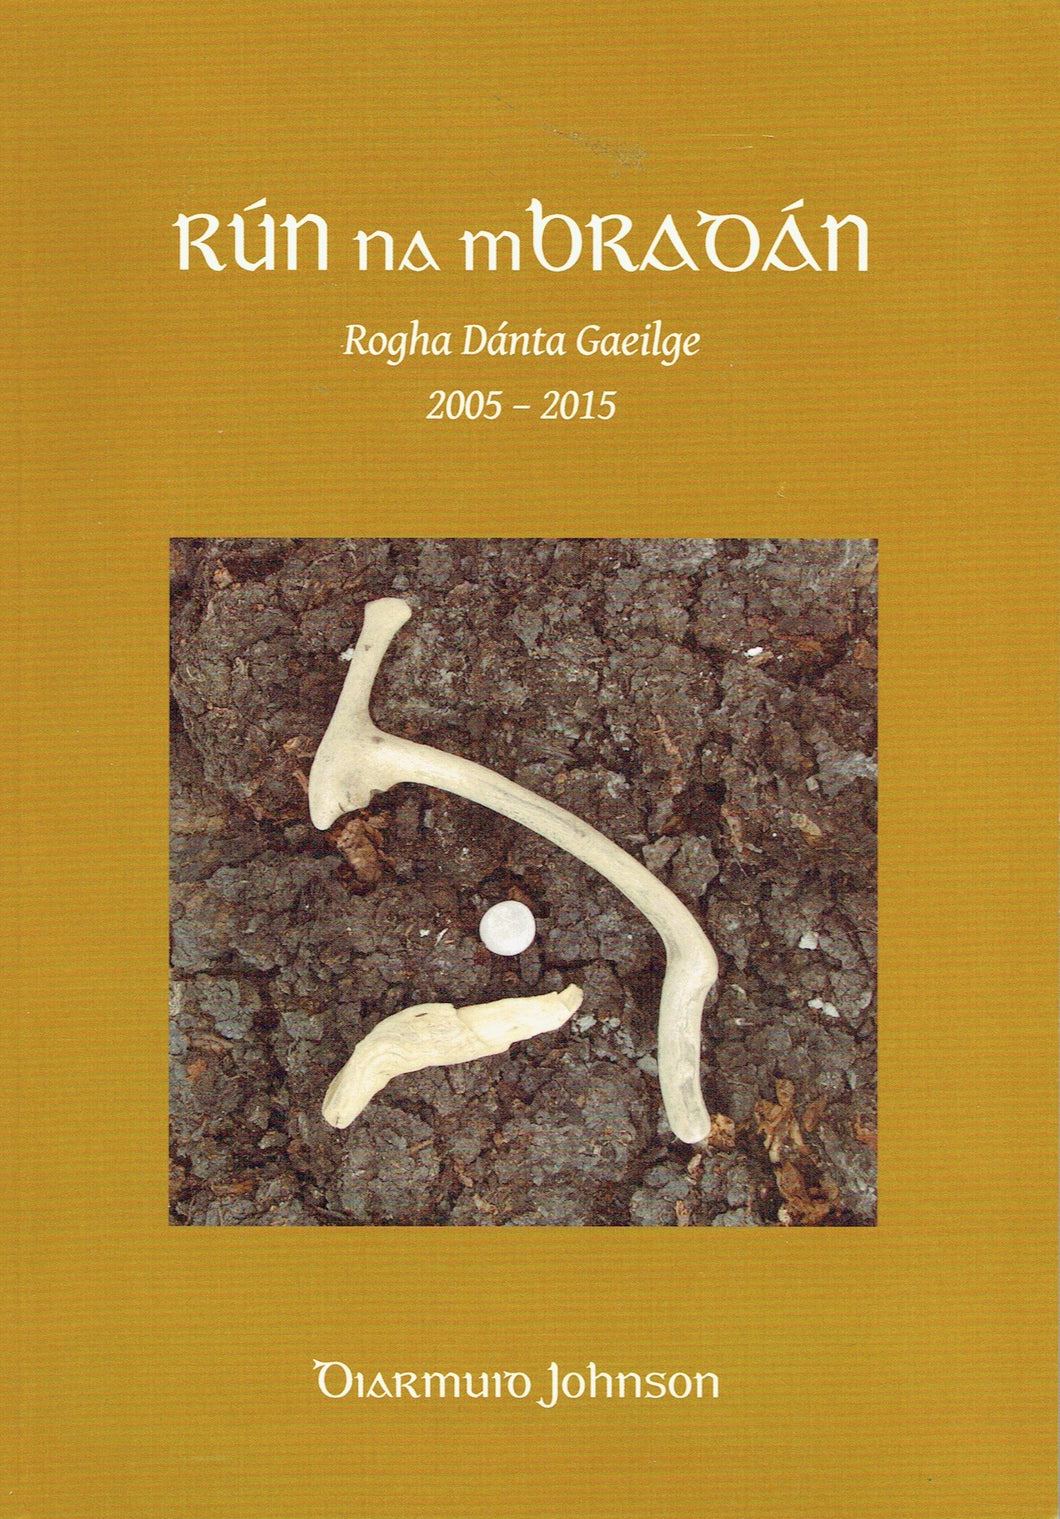 Rún na mBradán: Rogha Dánta Gaeilge, 2005-2015